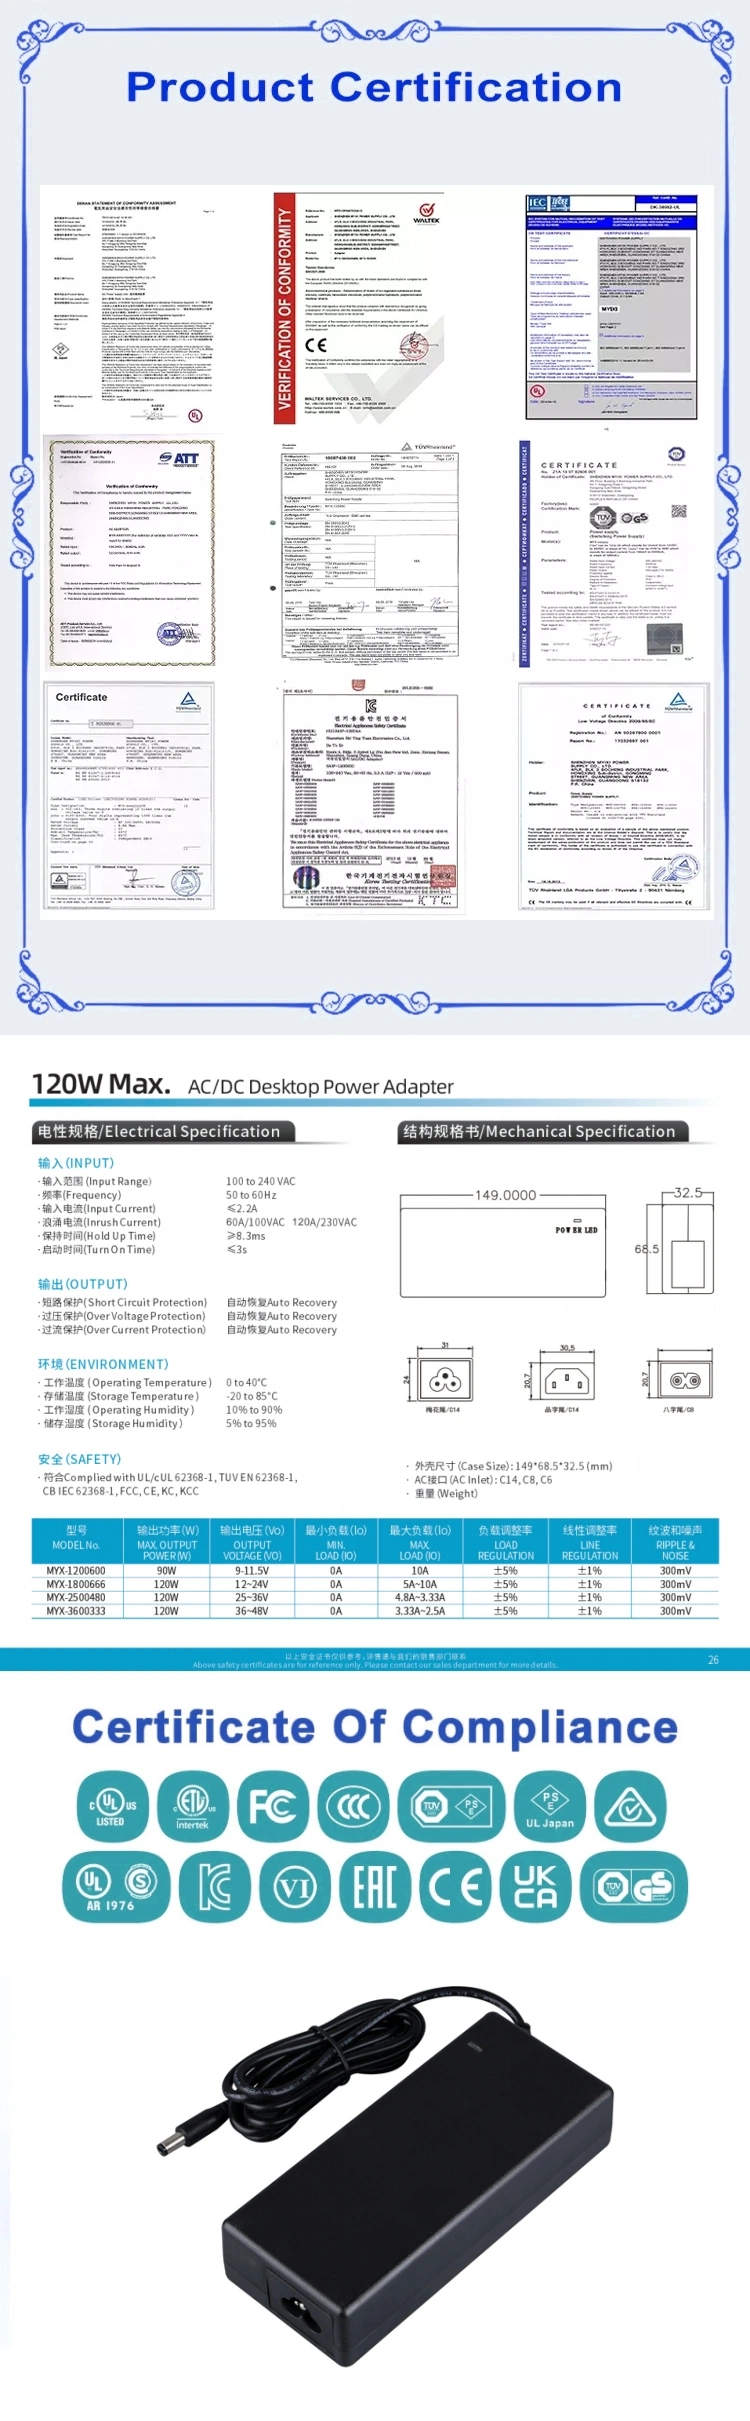 High Quality Factory AC 110V 200V LED Power Supply 12V 15V 24V 120watt Desktop Power Adapter 12V 10AMP Switching Power Supply 24V 5A 120W